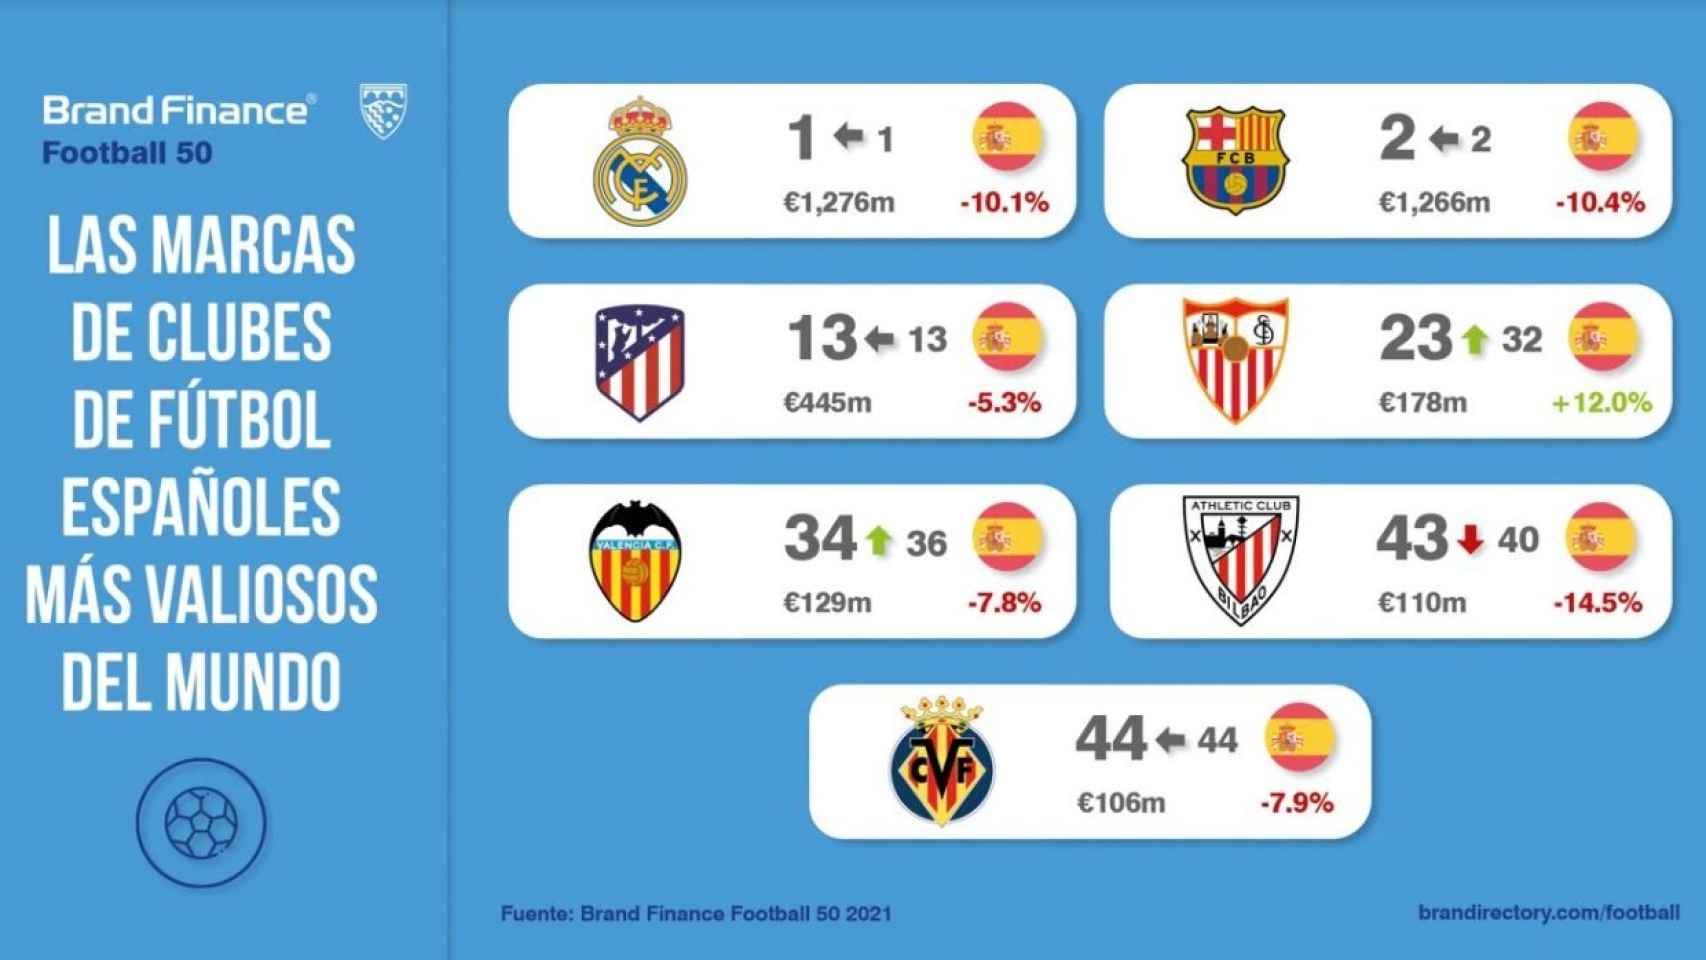 Los clubes de fútbol españoles con más valor de marca en el mundo